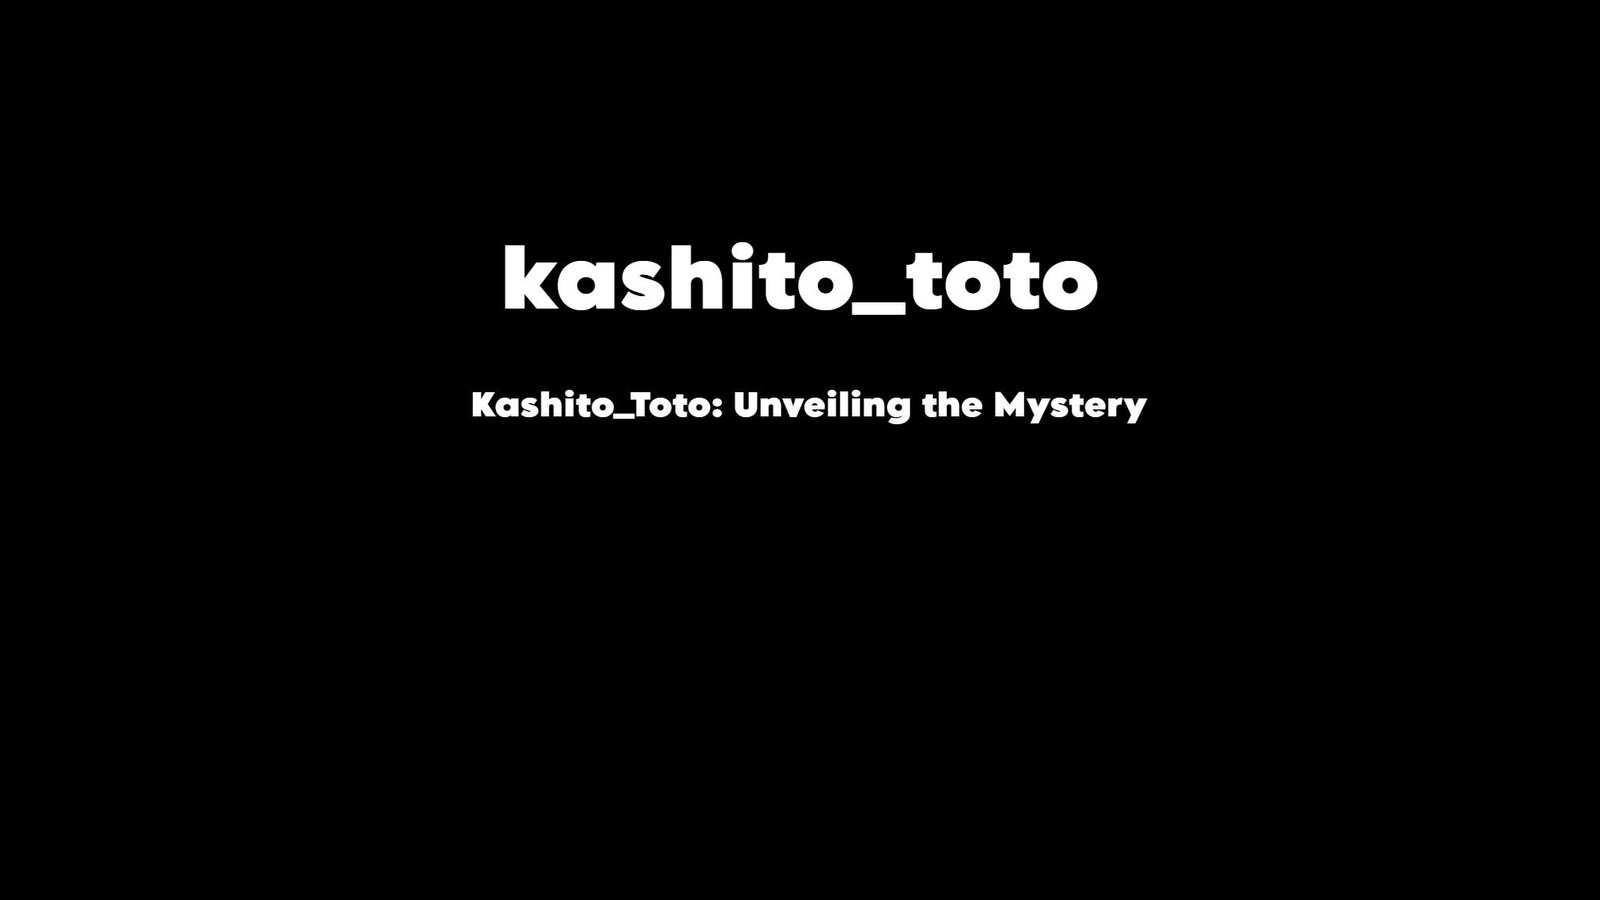 Mystical symbol representing Kashito Toto